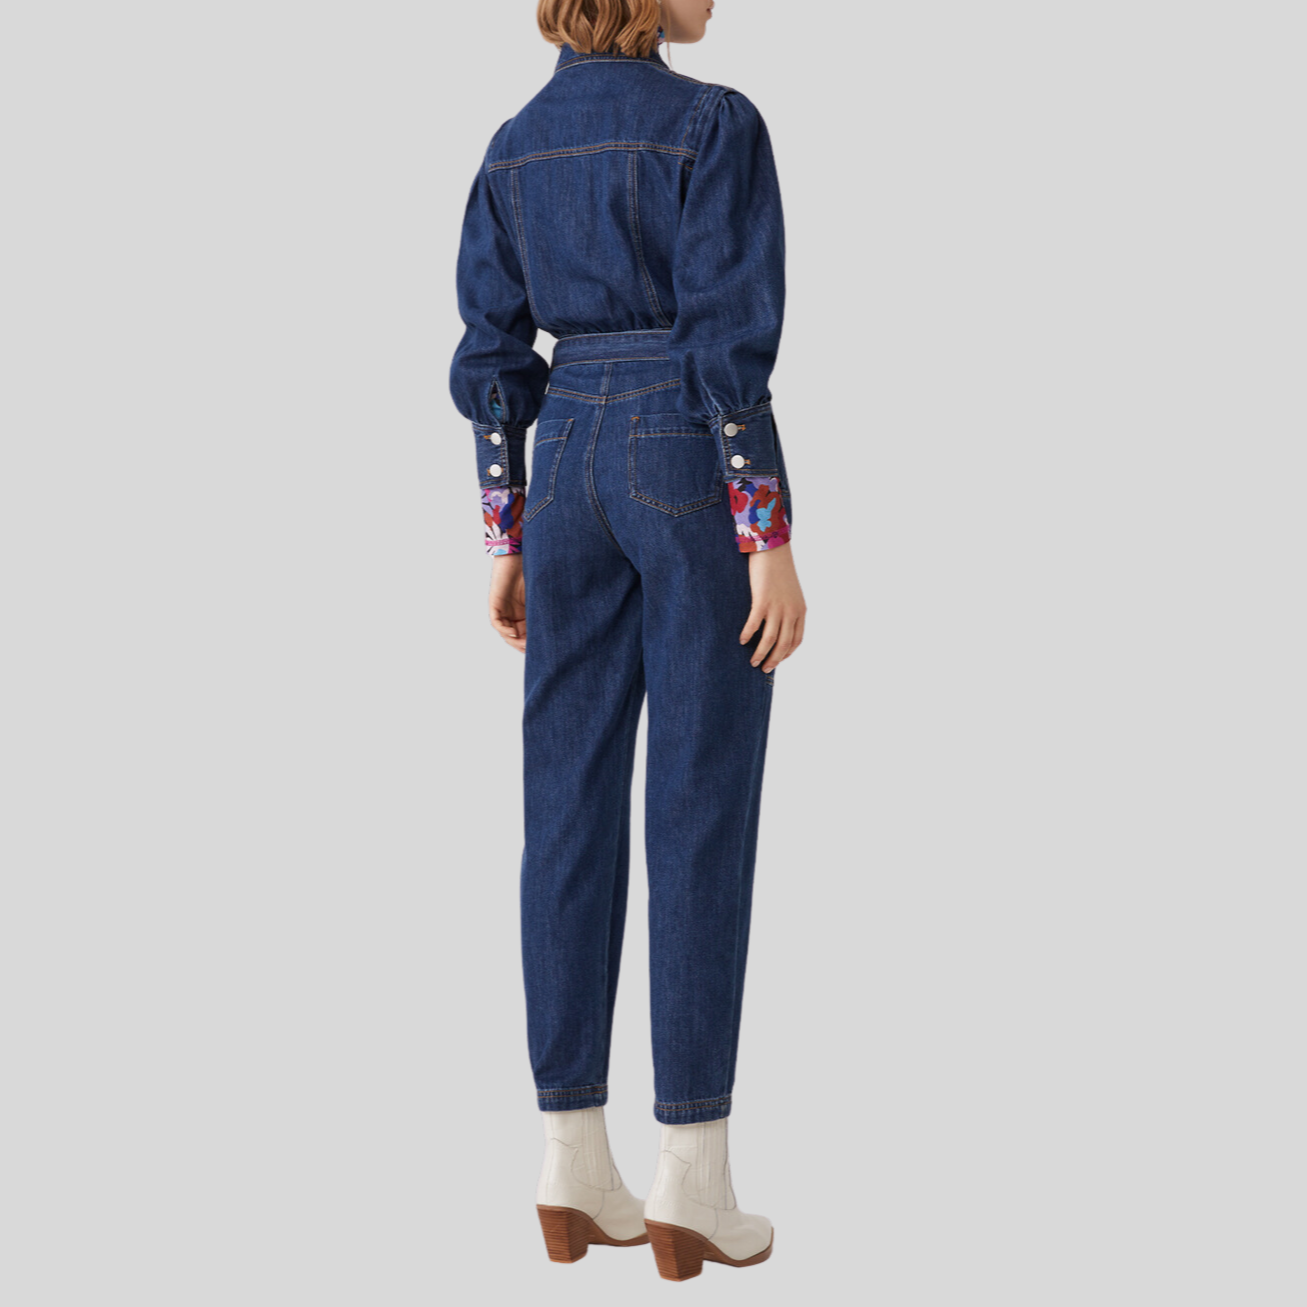 Gotstyle Fashion - Suncoo Jumpsuits Denim Front Zip Jumpsuit - Blue